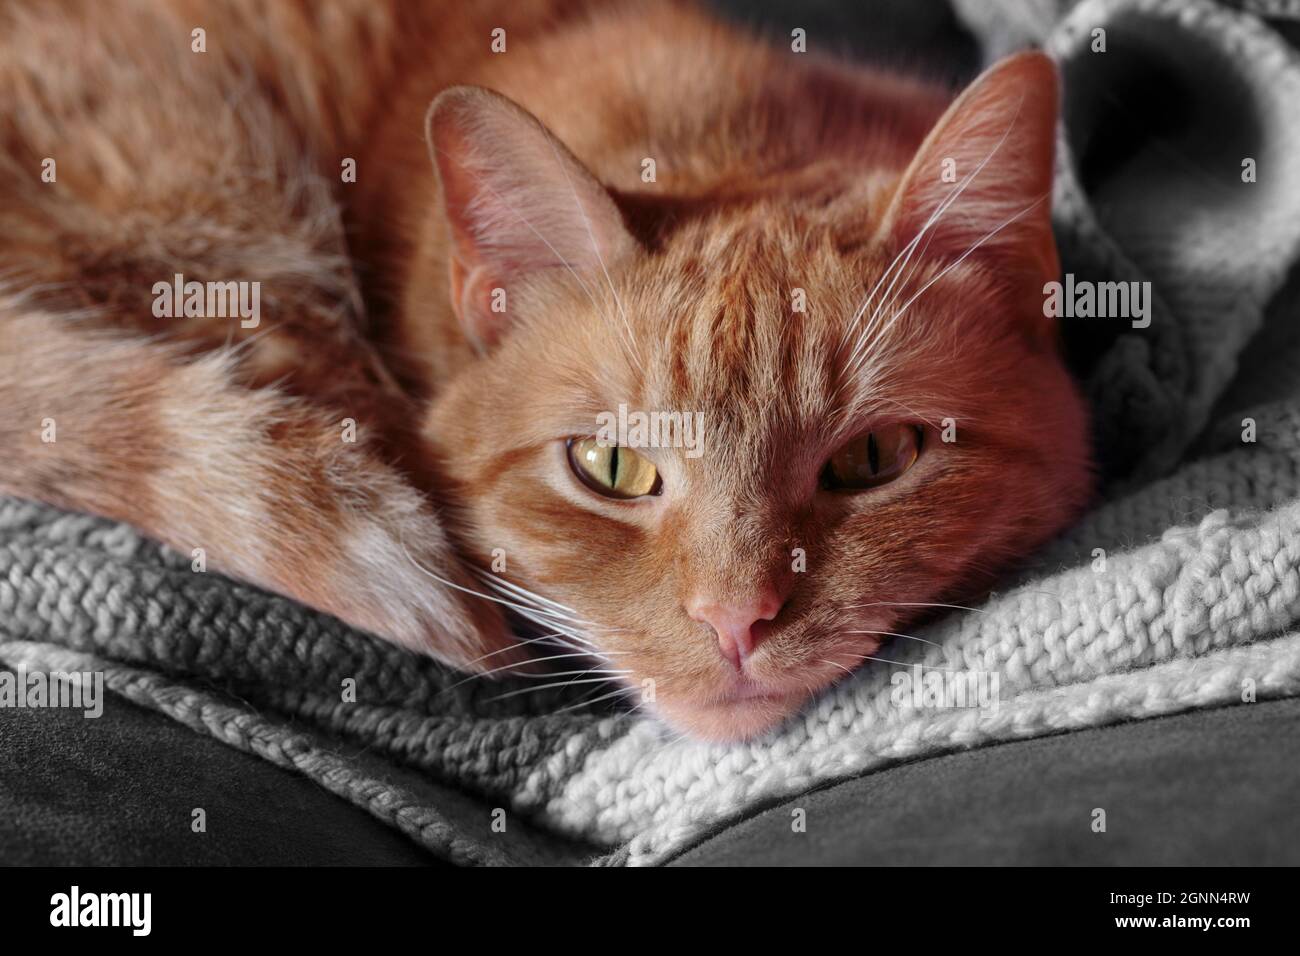 gros plan d'un chat tabby orange avec des yeux en cuivre courbés sur une couverture qui s'affiche sur l'appareil photo Banque D'Images